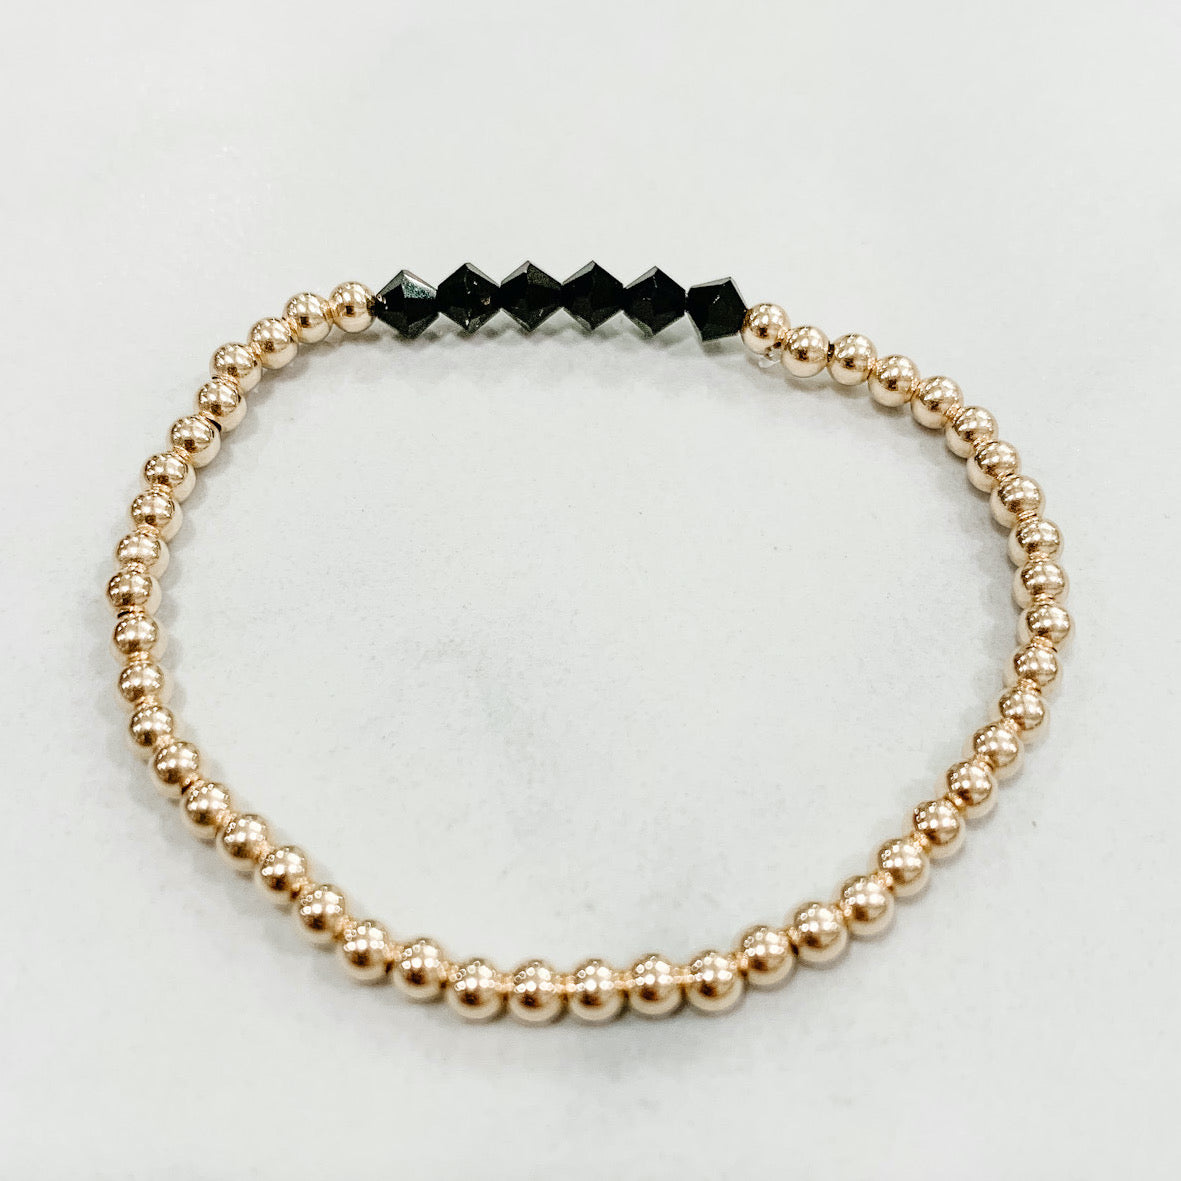 Sailor Gold Bracelet